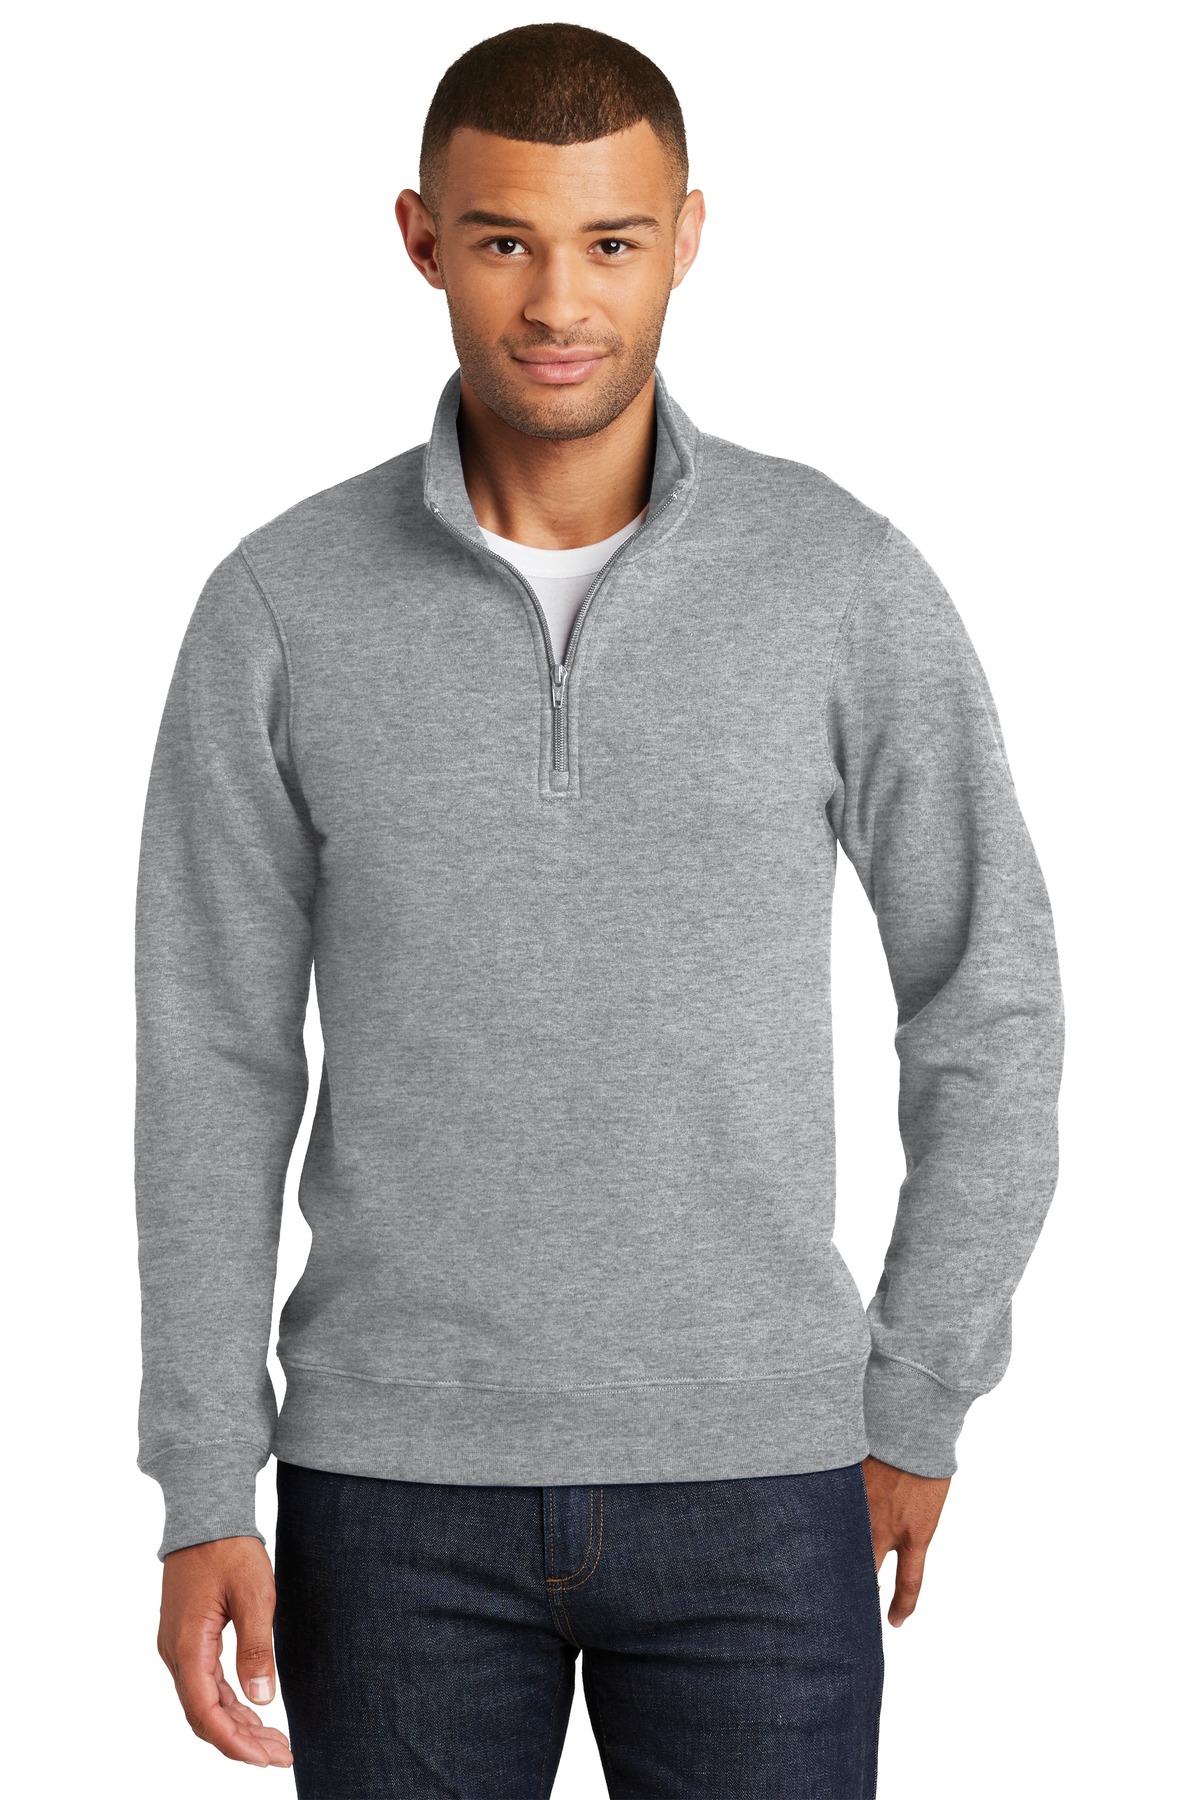 Port & Company Fan Favorite Fleece 1/4-Zip Pullover Sweatshirt. PC850Q